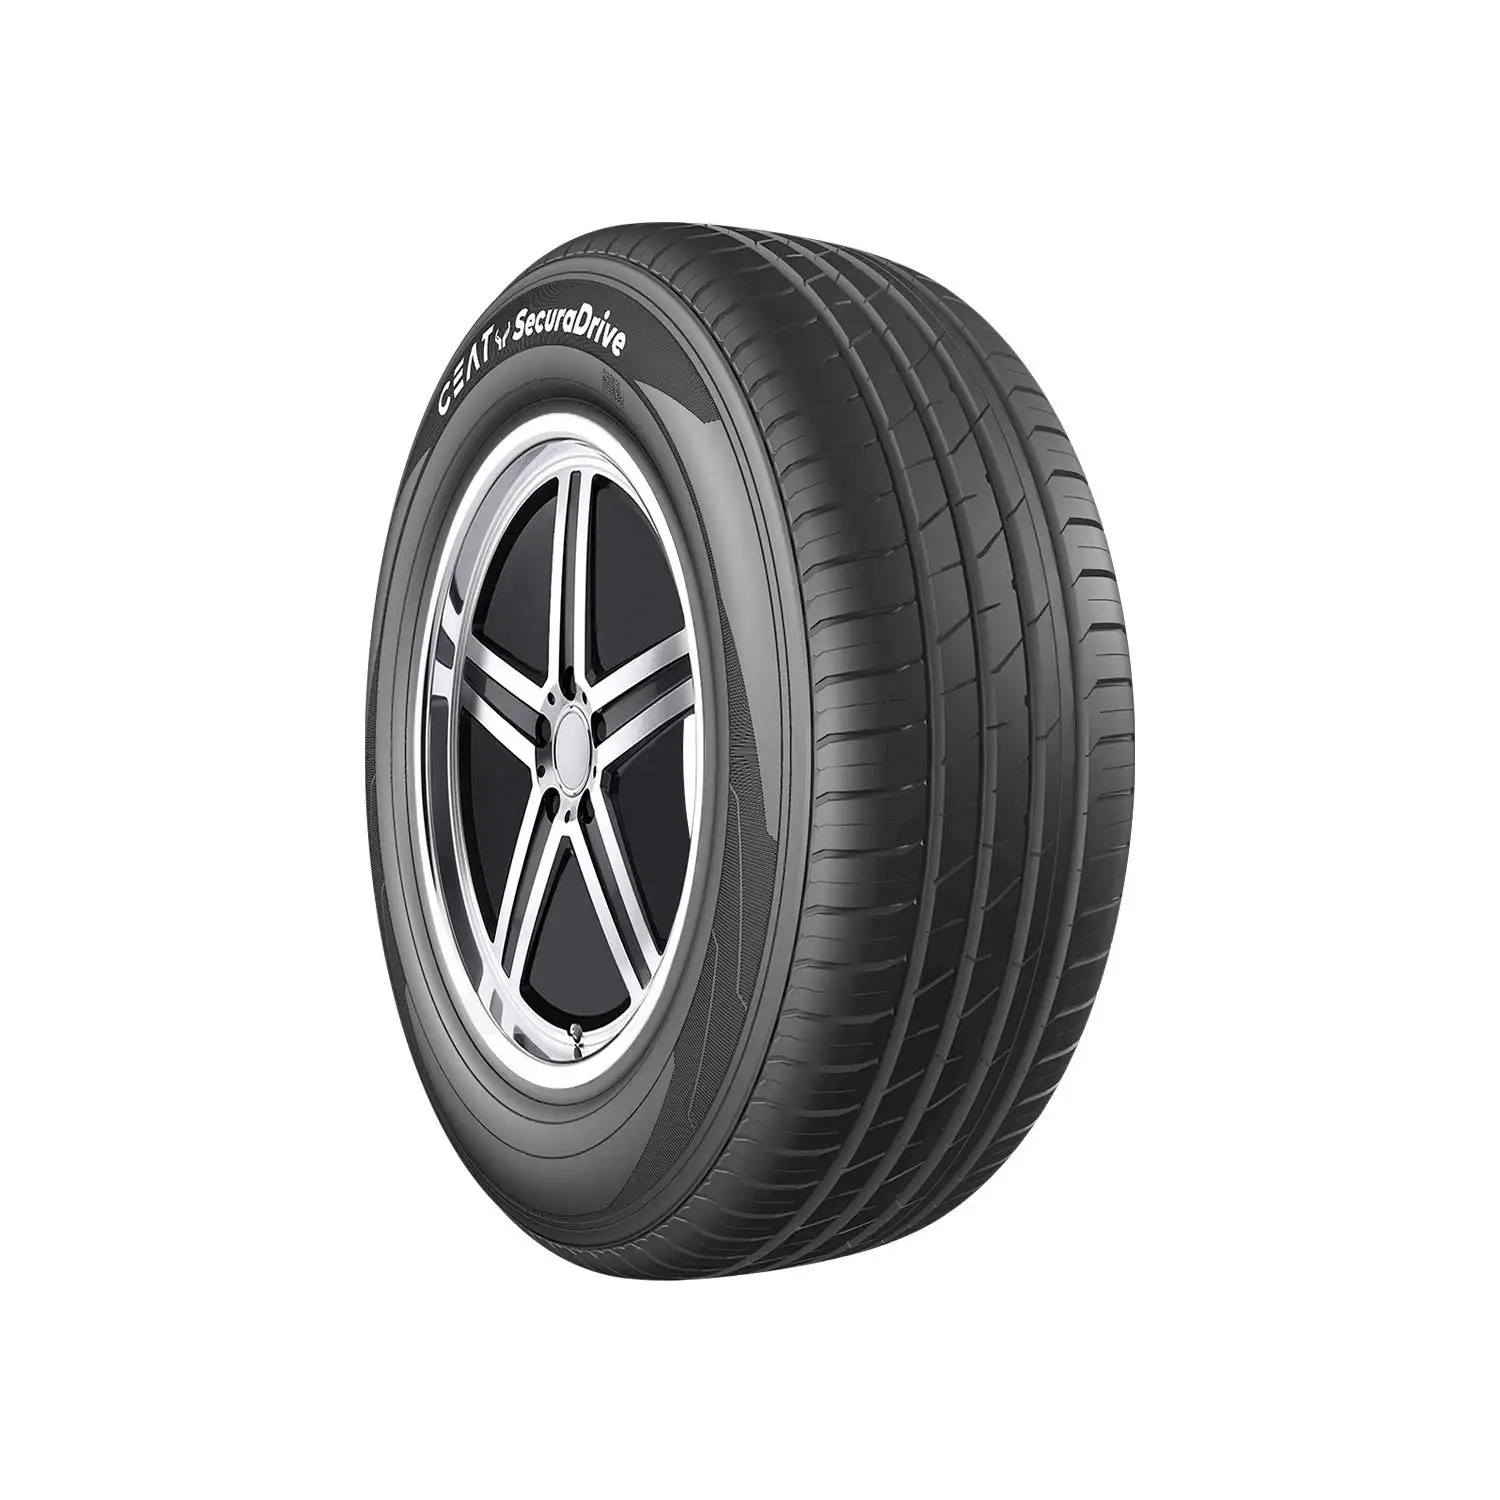 Gebrauchte Autoreifen / Gebrauchte Reifen / Second-Hand-Reifen gebrauchte Reifen Großhandel Export nach Österreich